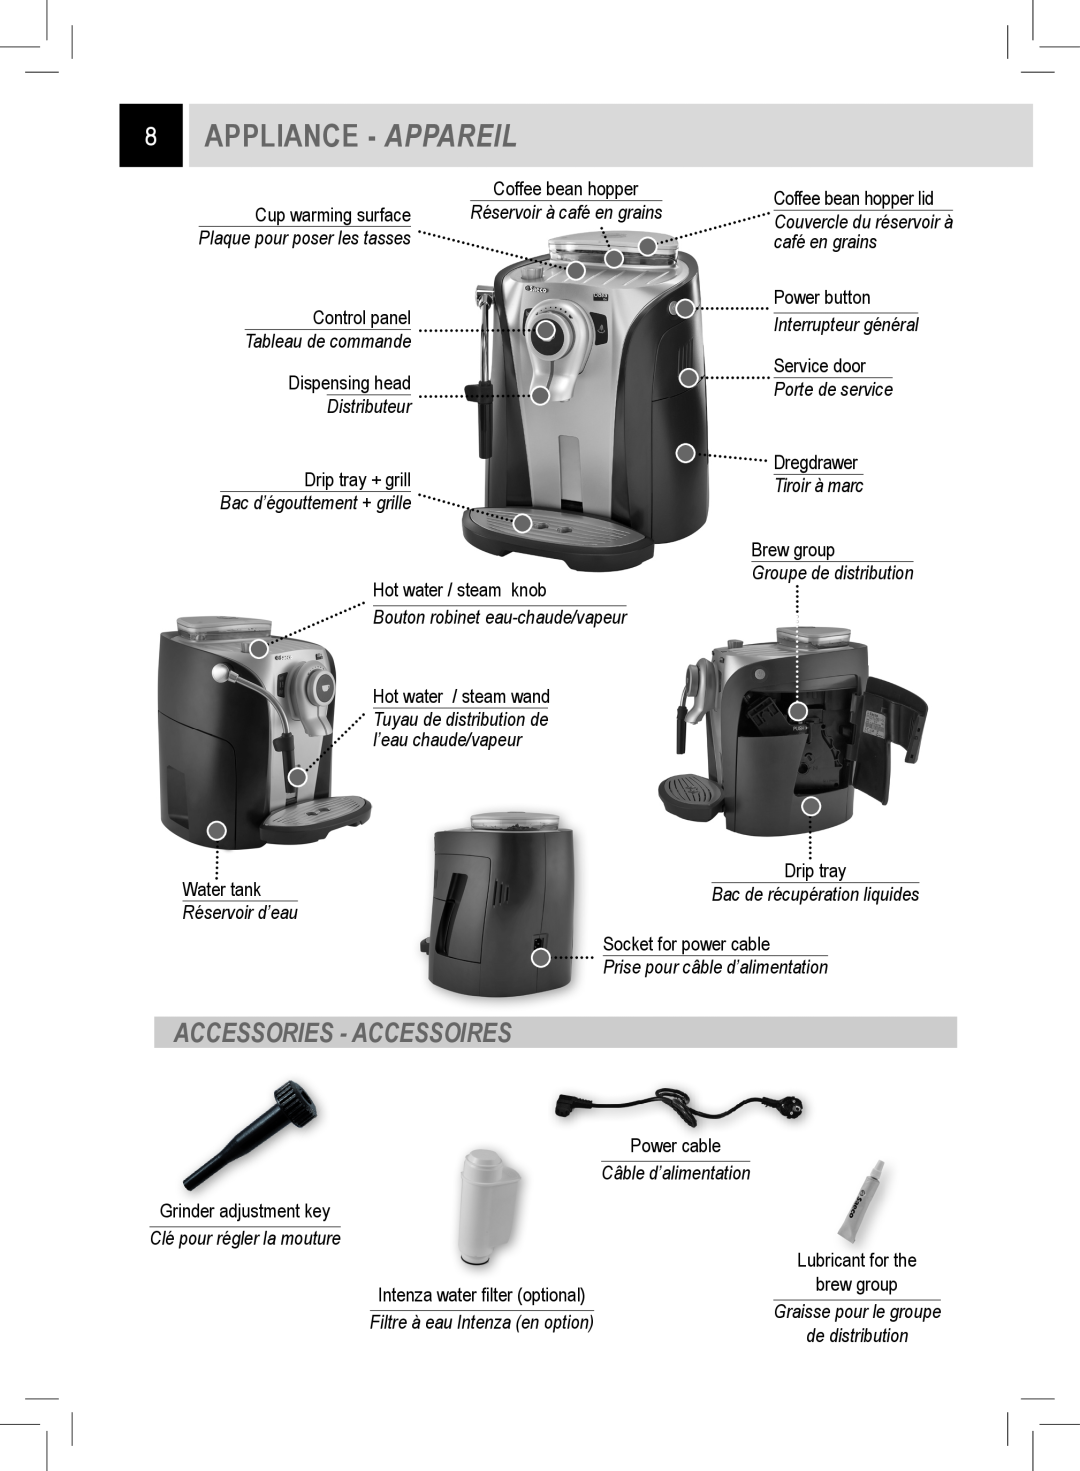 Saeco Coffee Makers RI9752/47 manual Appliance - Appareil, Accessories - Accessoires, Tableau de commande, Distributeur 